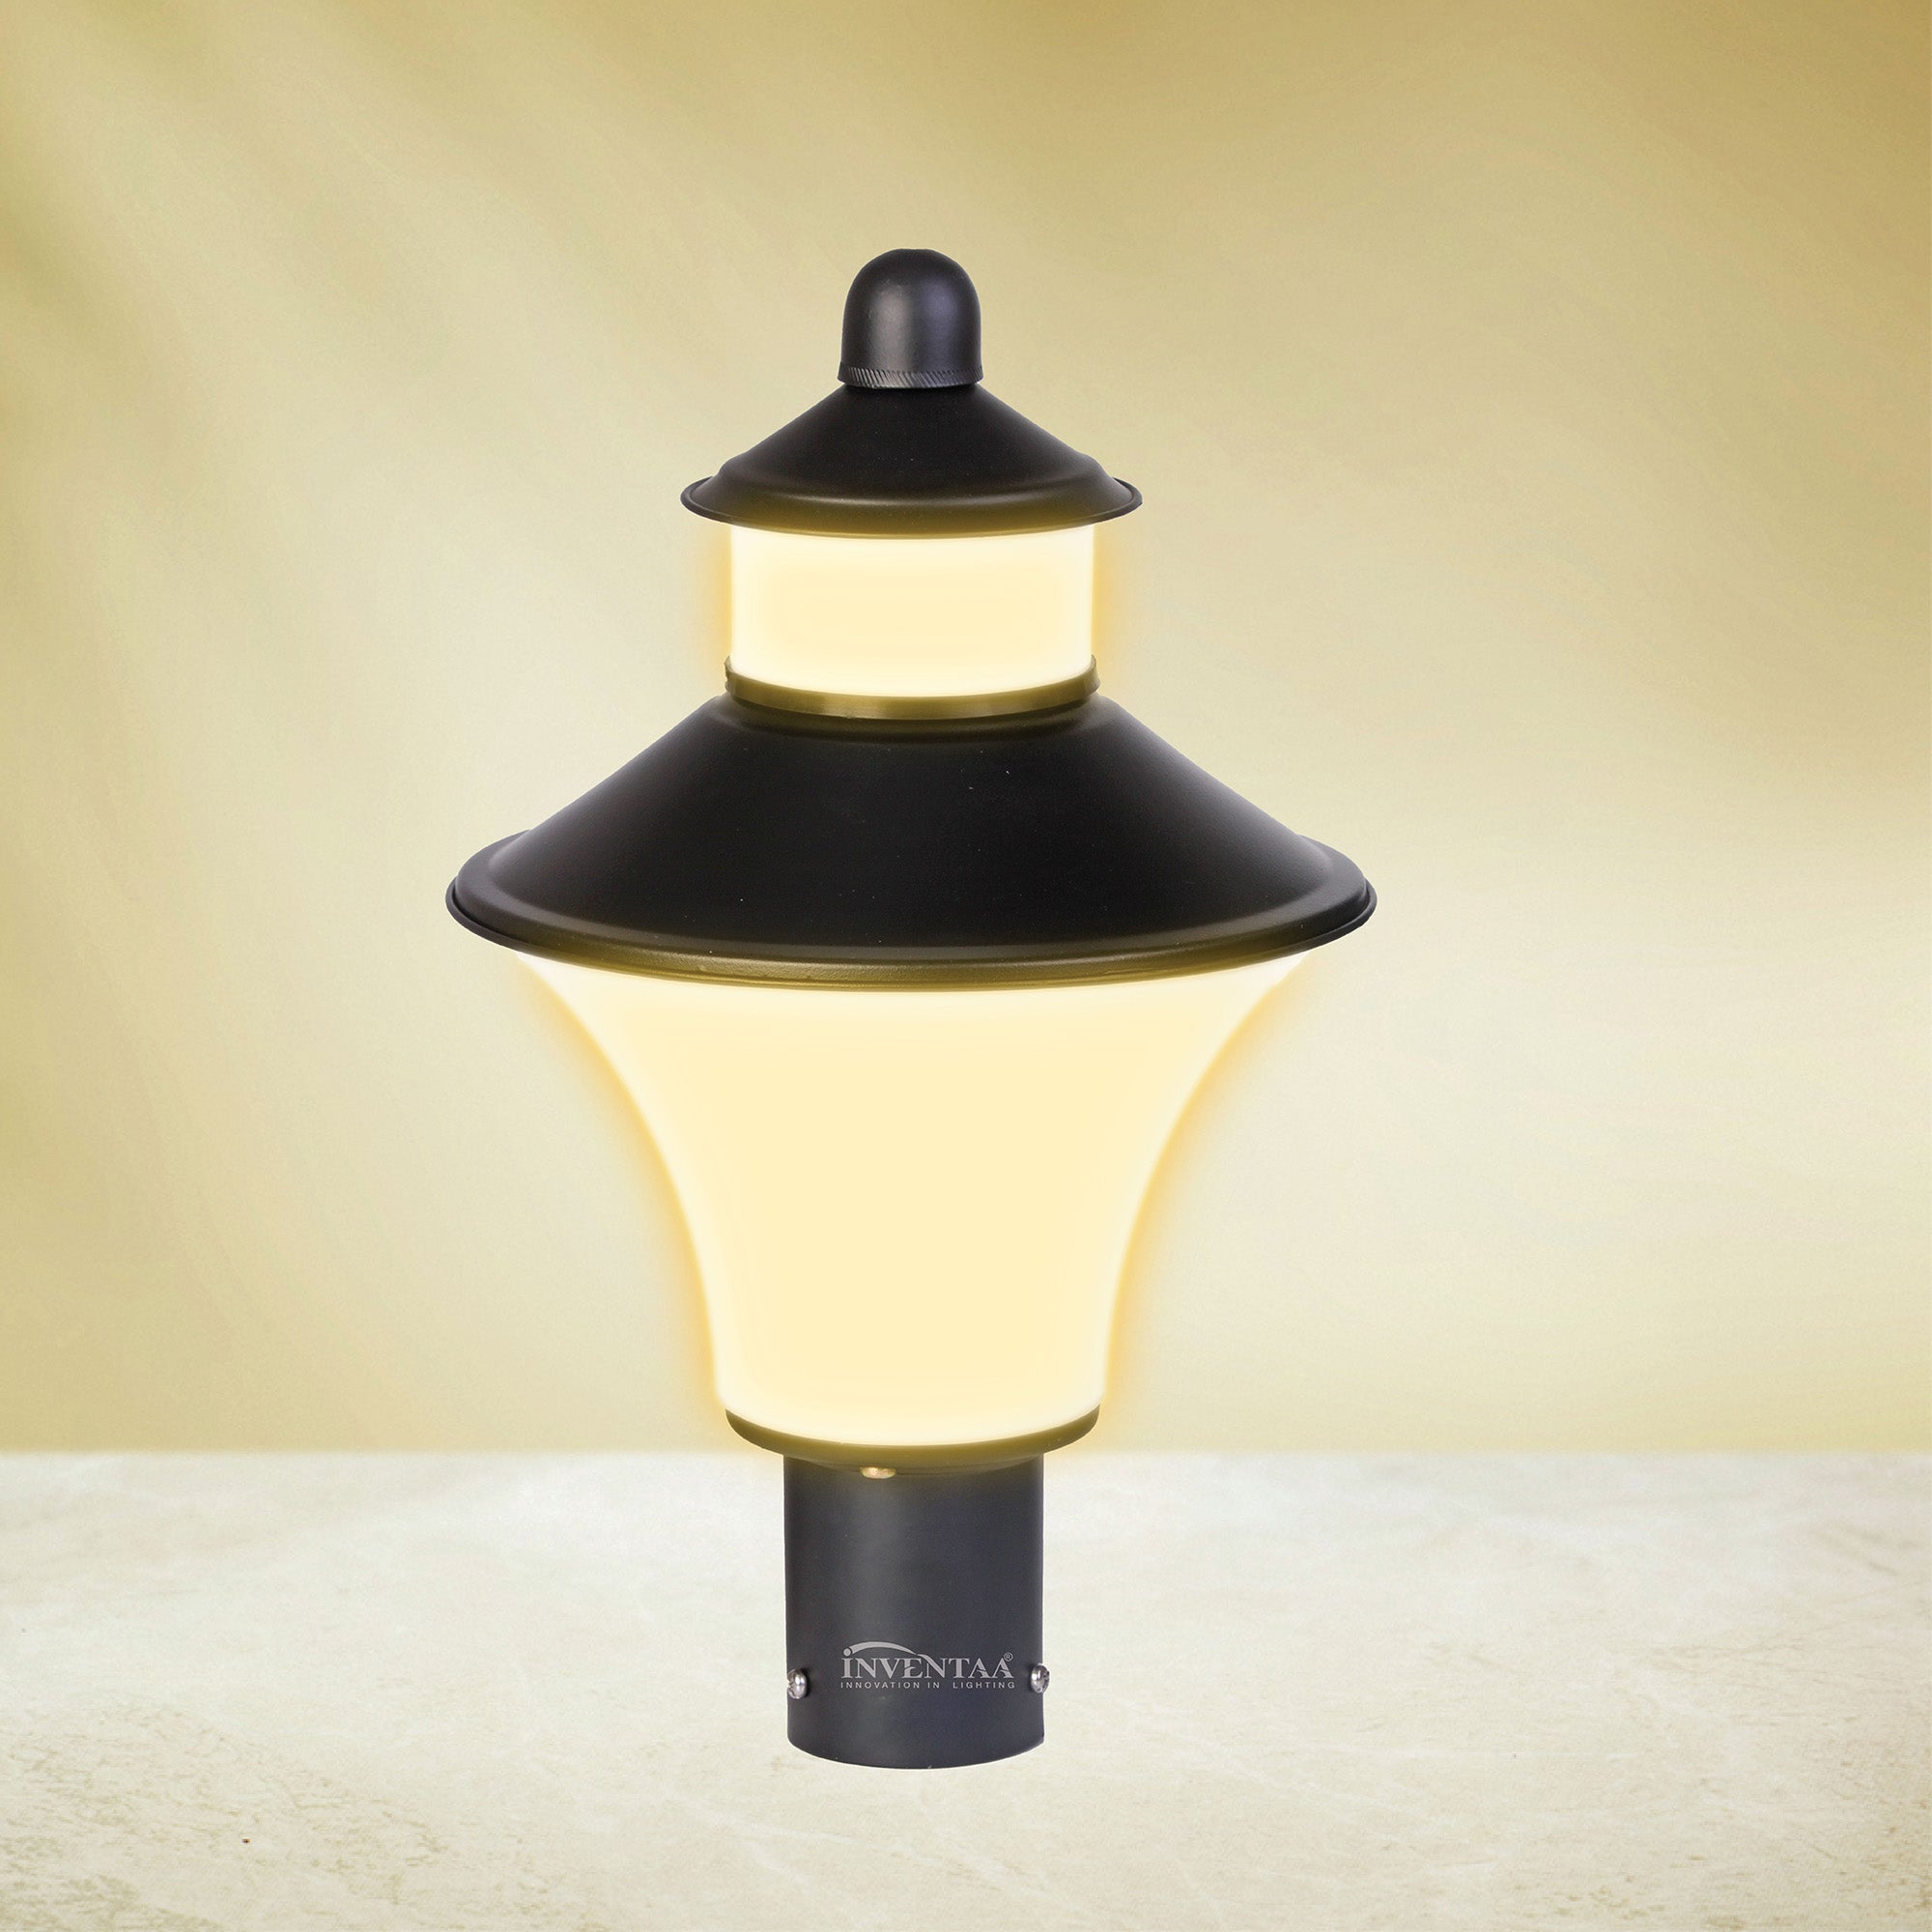 Optic Fabula LH Matt Black Warm White | Best LED Gate Light Model Online at affordable price Online #color_matt black white